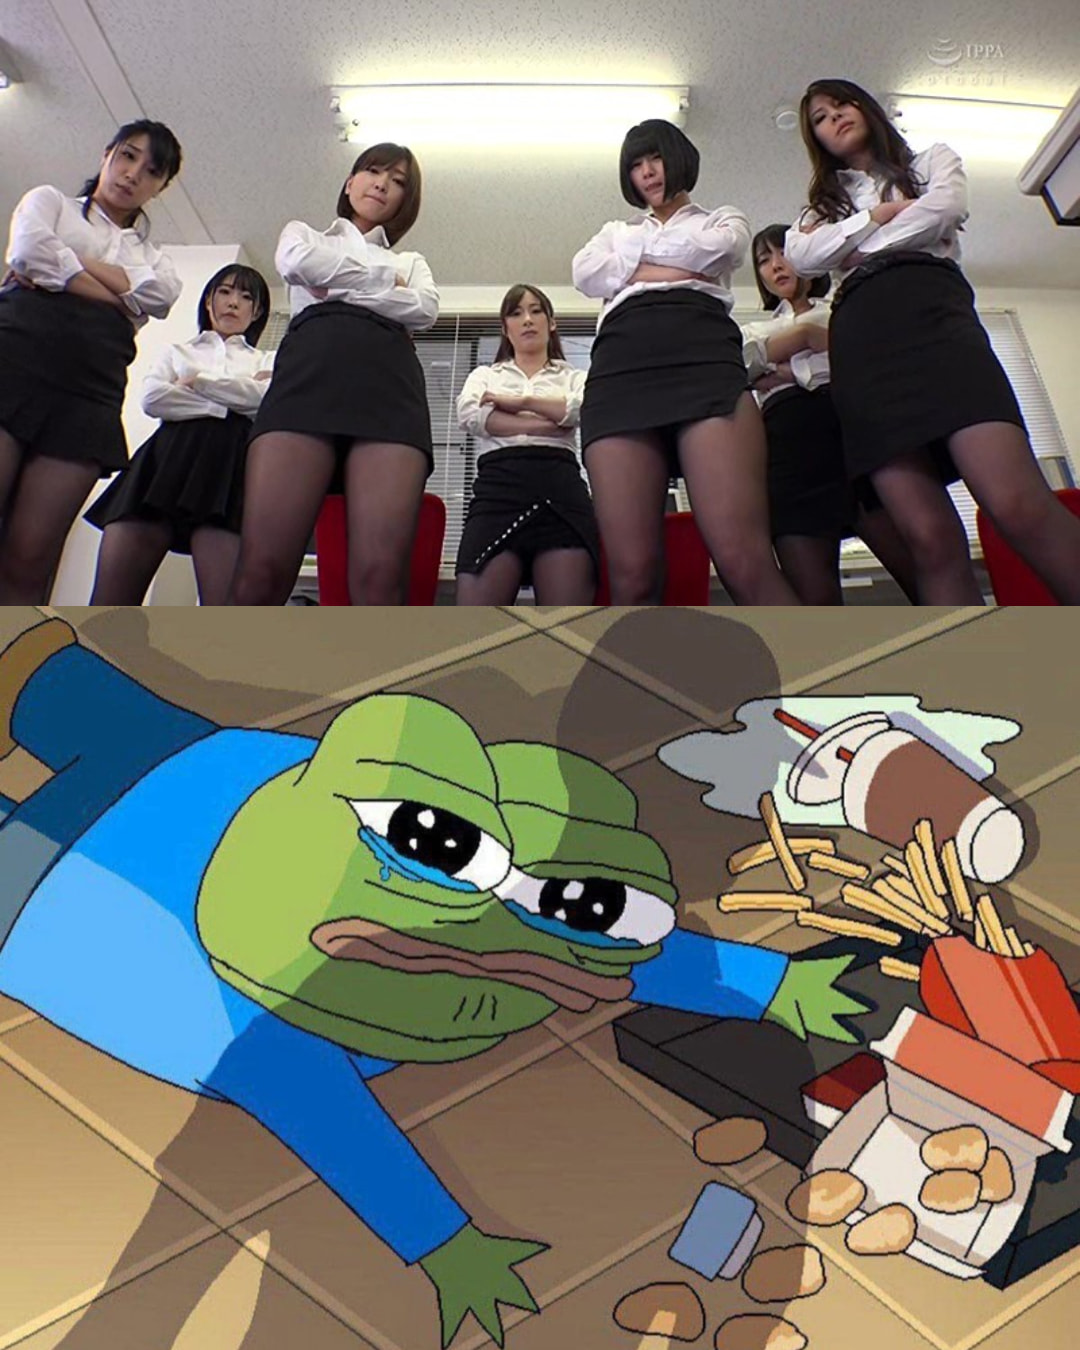 Apu Spills His Tendies - Japanese Girls Looking Down on Apu Blank Meme Template